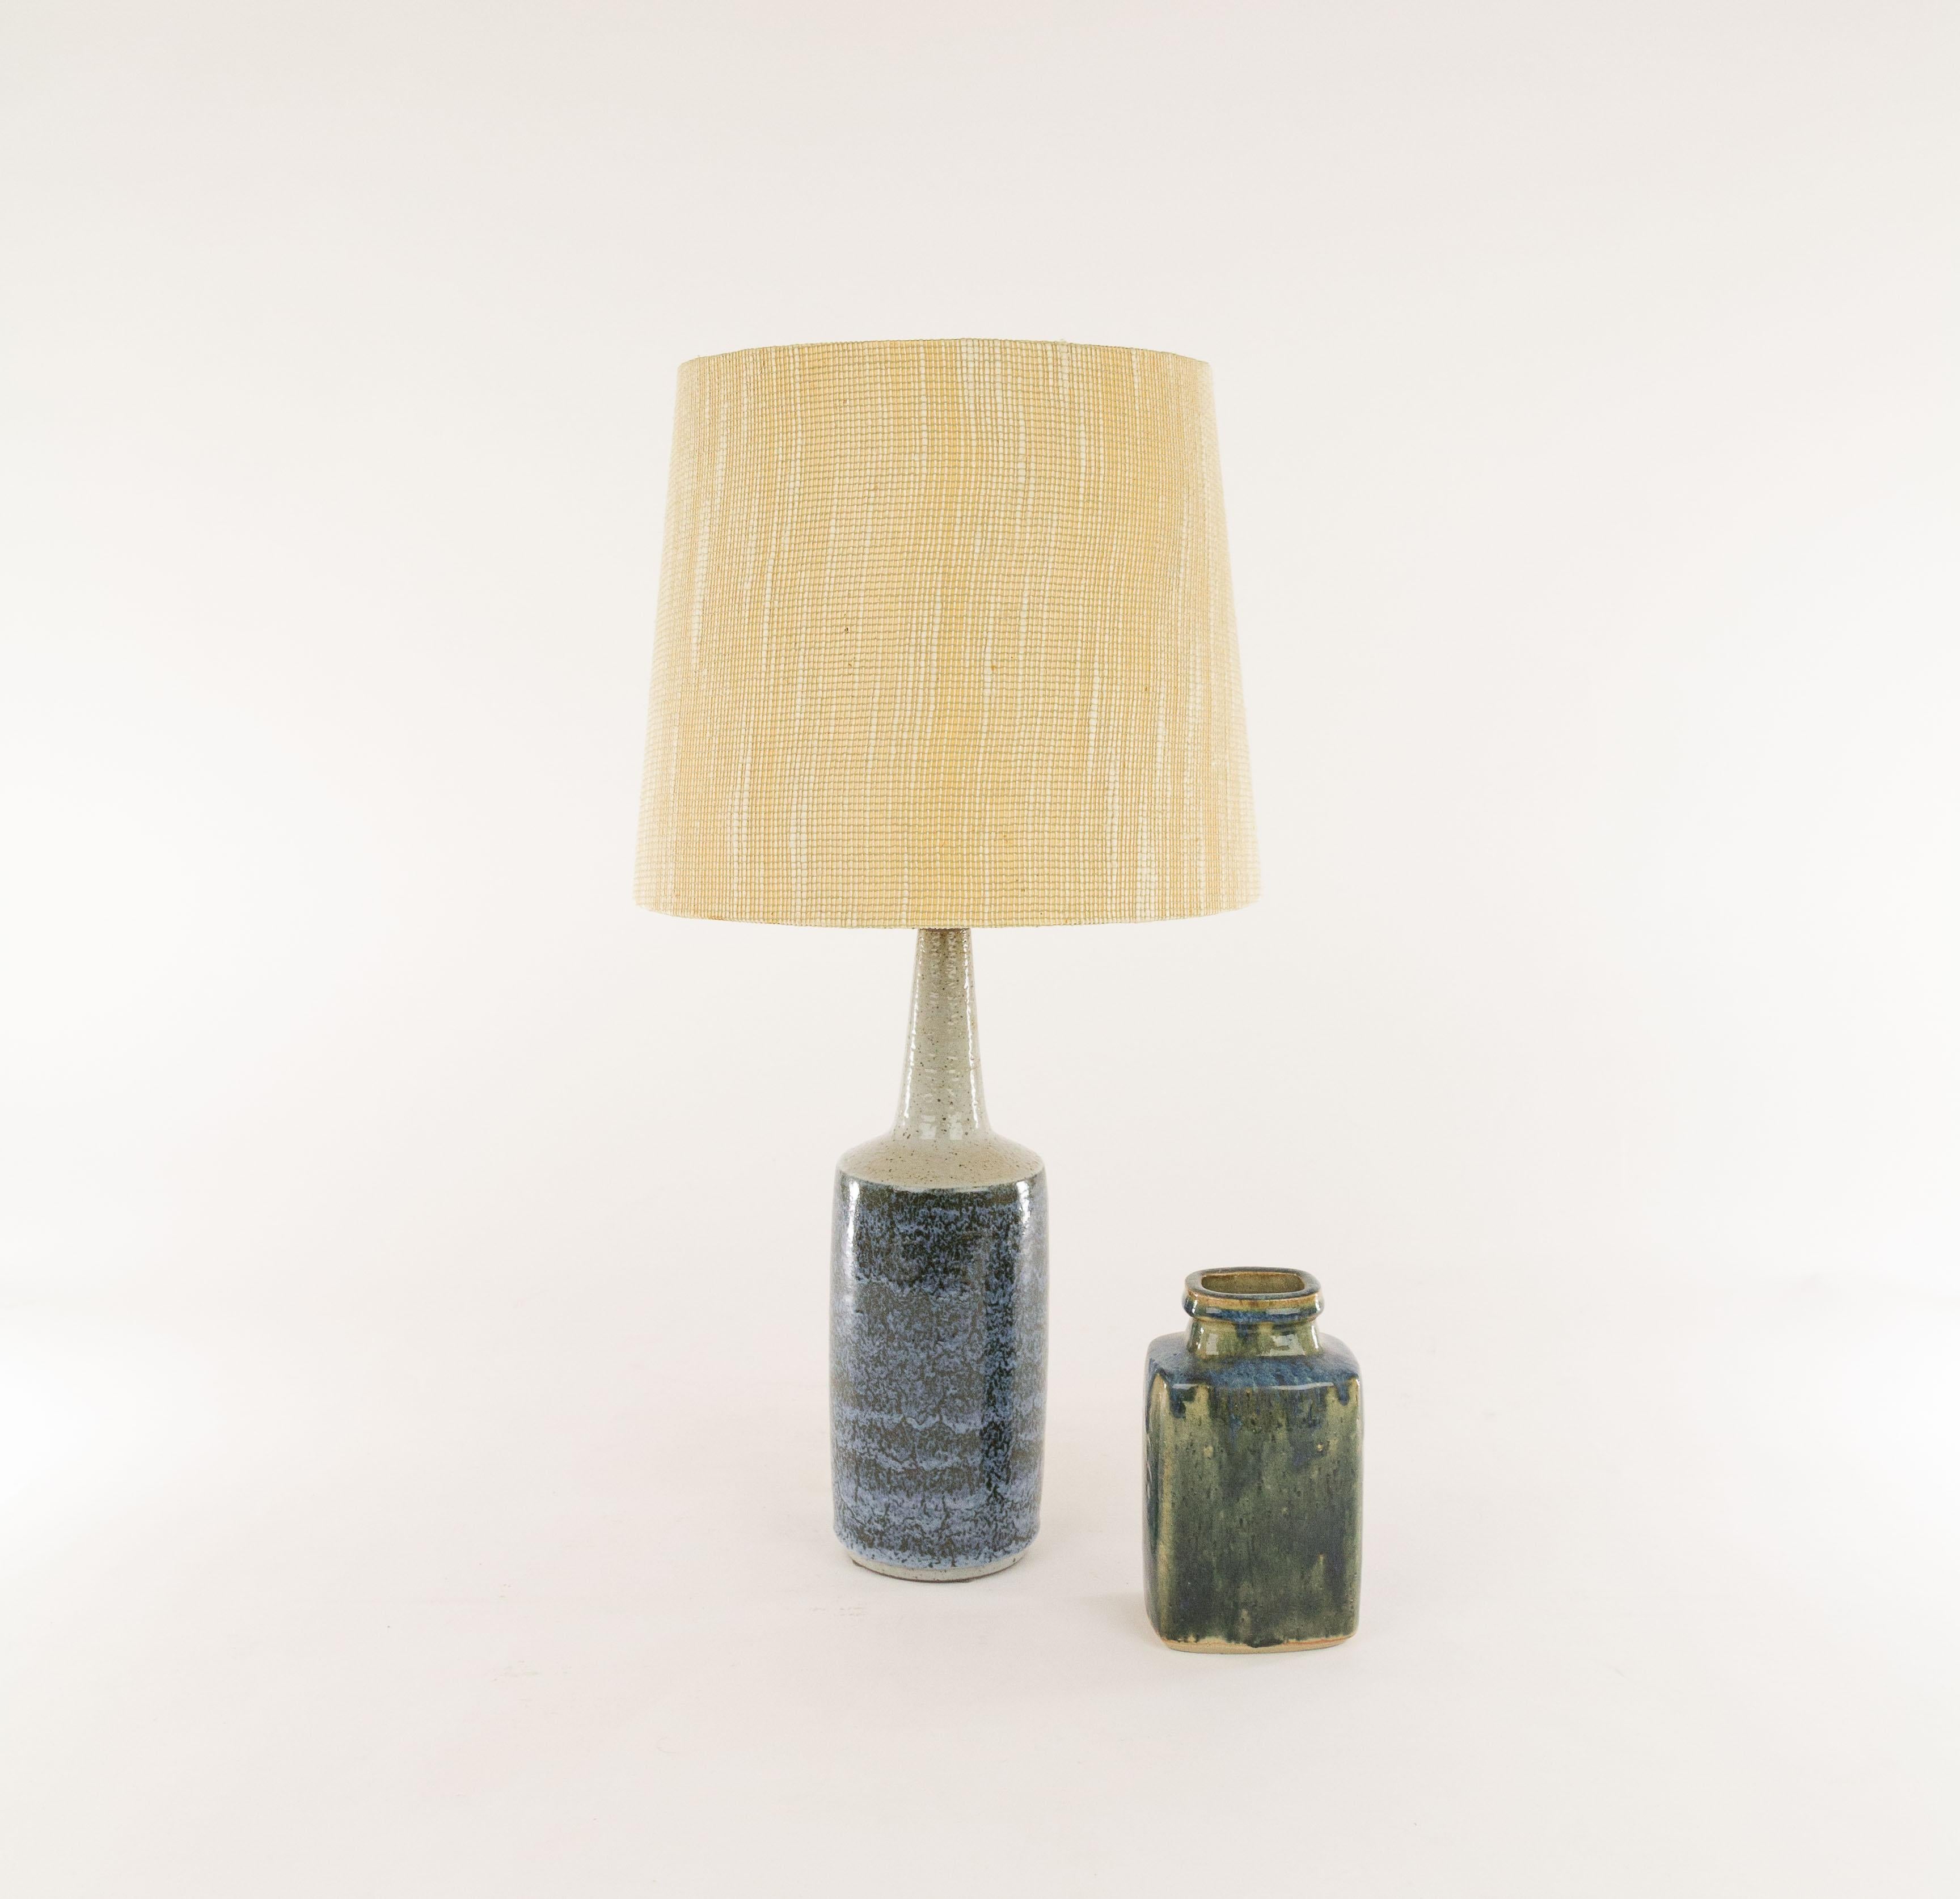 Lampe de table danoise en chamotte (argile texturée) à décor imprimé par Annelise et Per Linnemann-Schmidt pour Palshus, Danemark, années 1960.

Palshus a produit une large gamme de lampes de table, avec différents motifs, hauteurs et couleurs